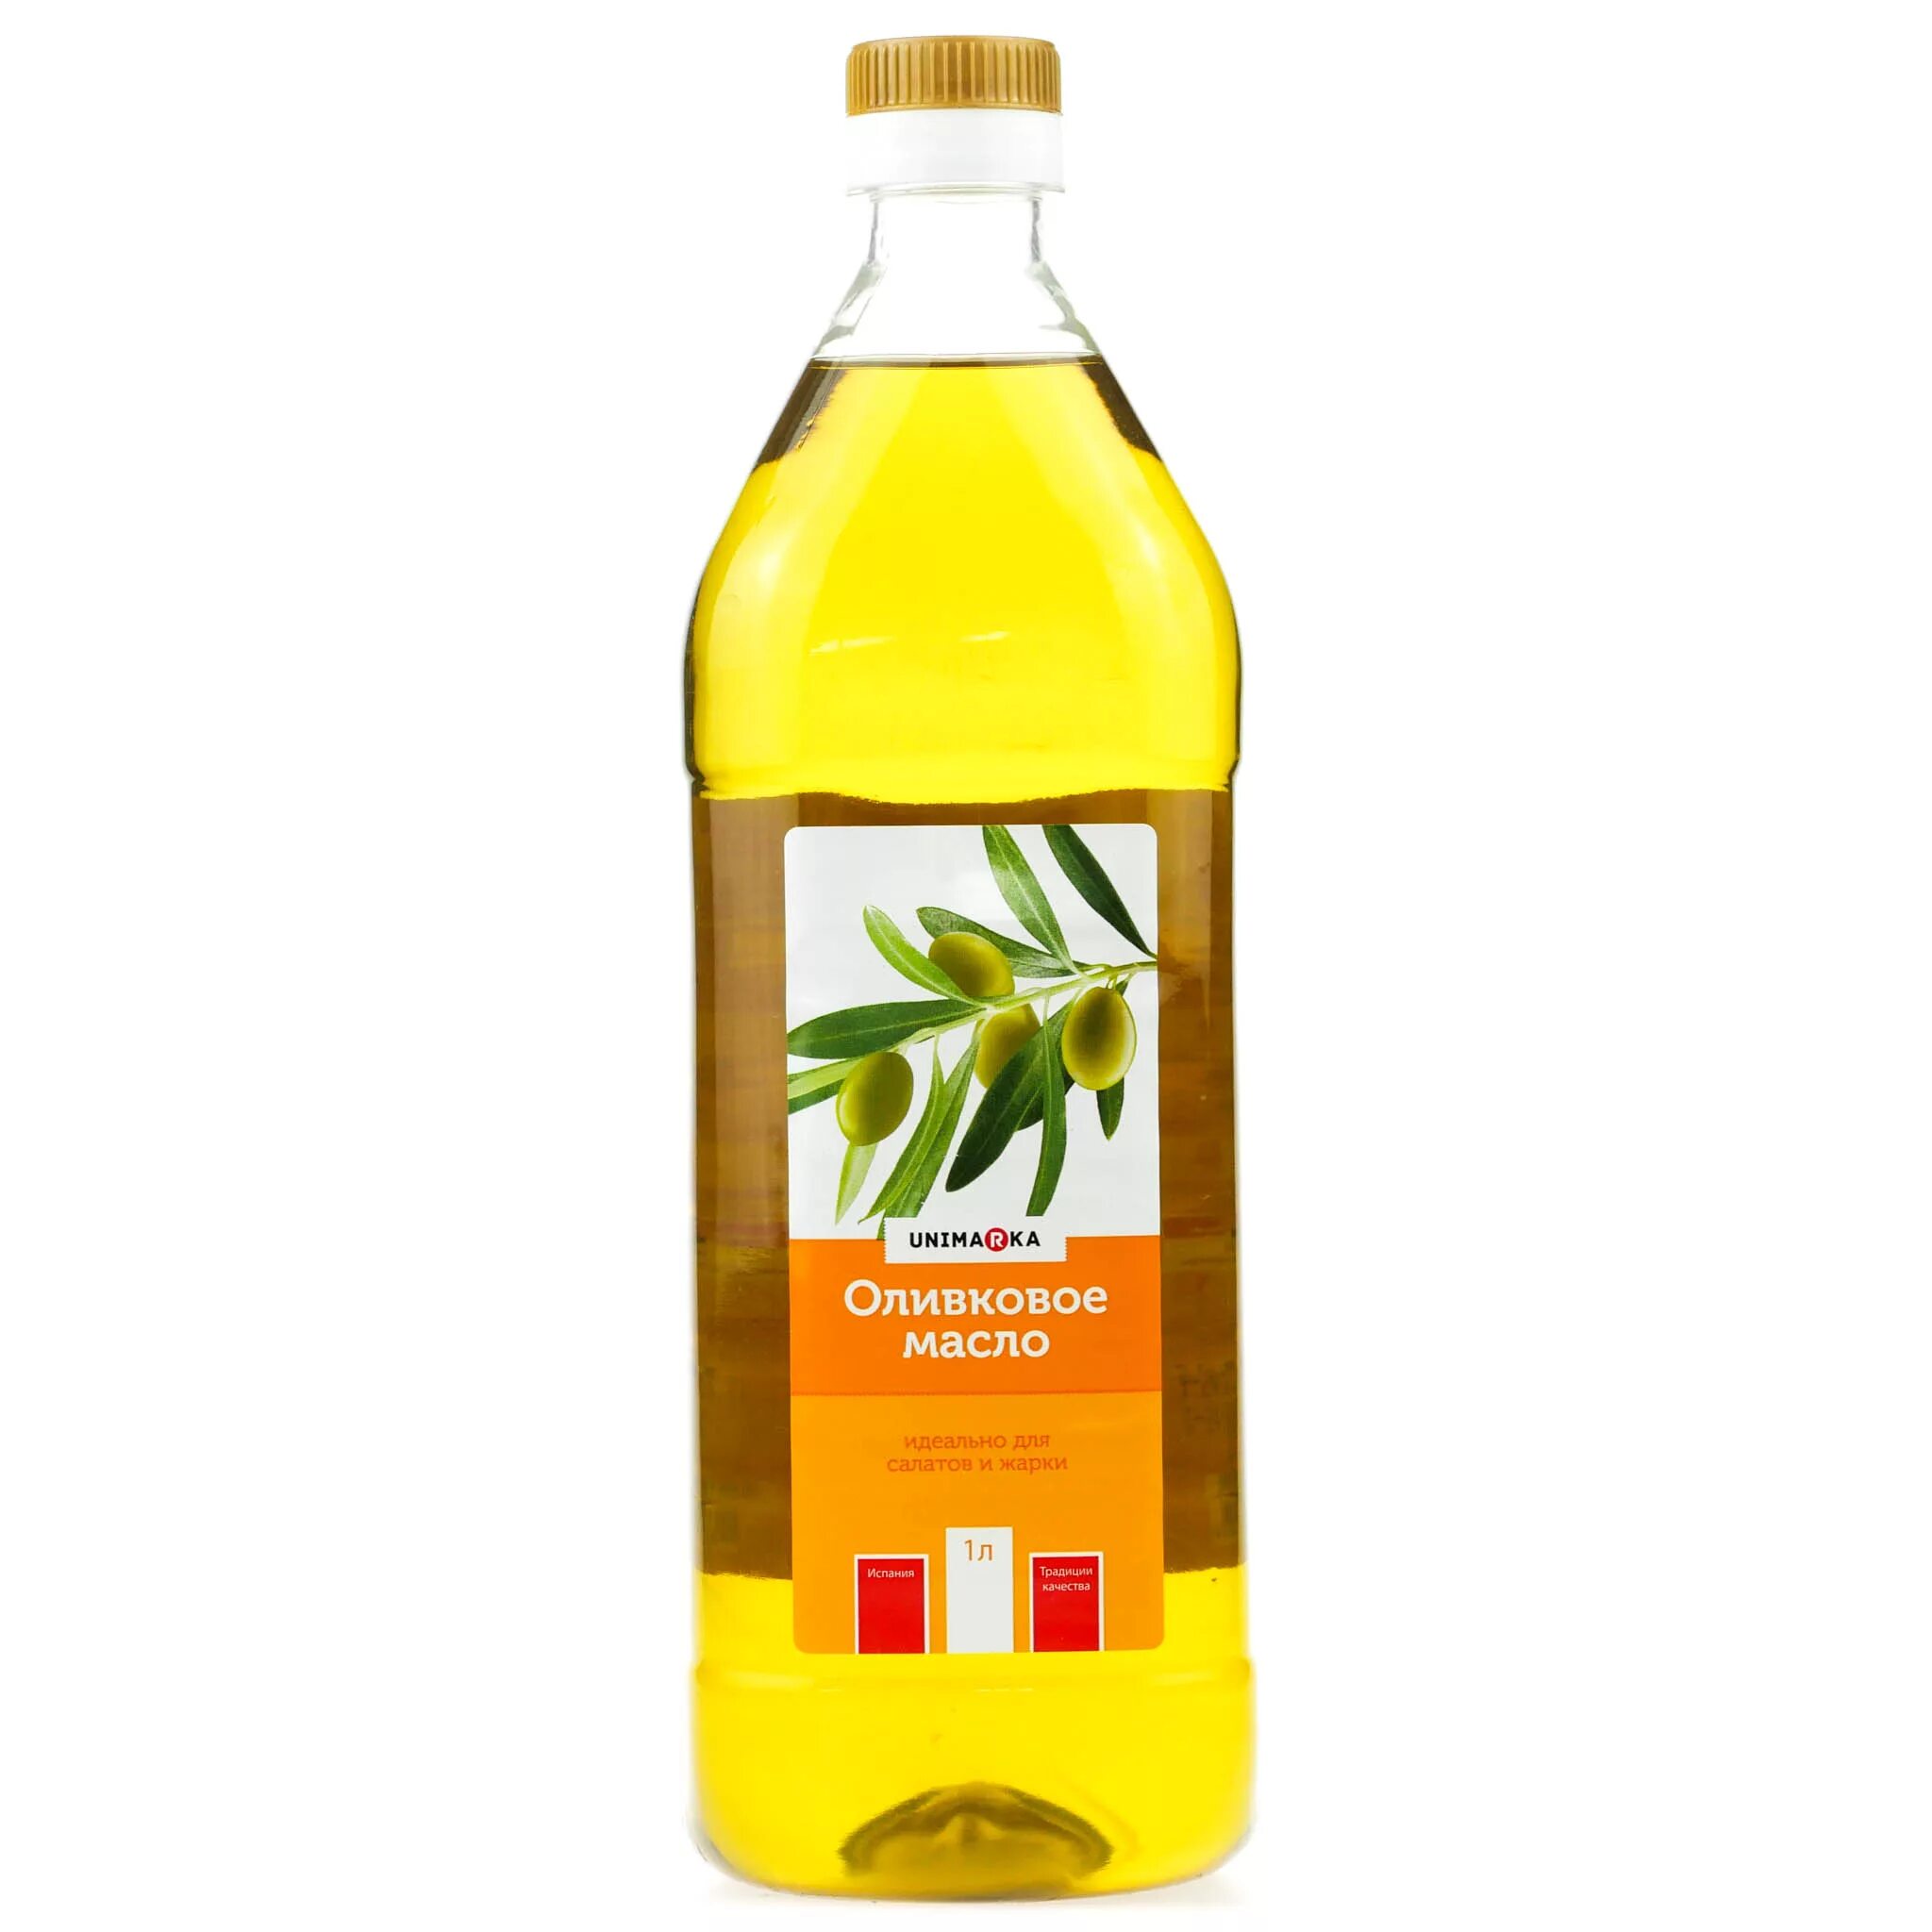 Оливковое масло botanika 1 л рафинированное. Оливковое масло рафинированное и нерафинированное. Масло рапсовое нерафинированное. Рафинированное масло оливковое для салата. Масло для салата рафинированное или нерафинированное